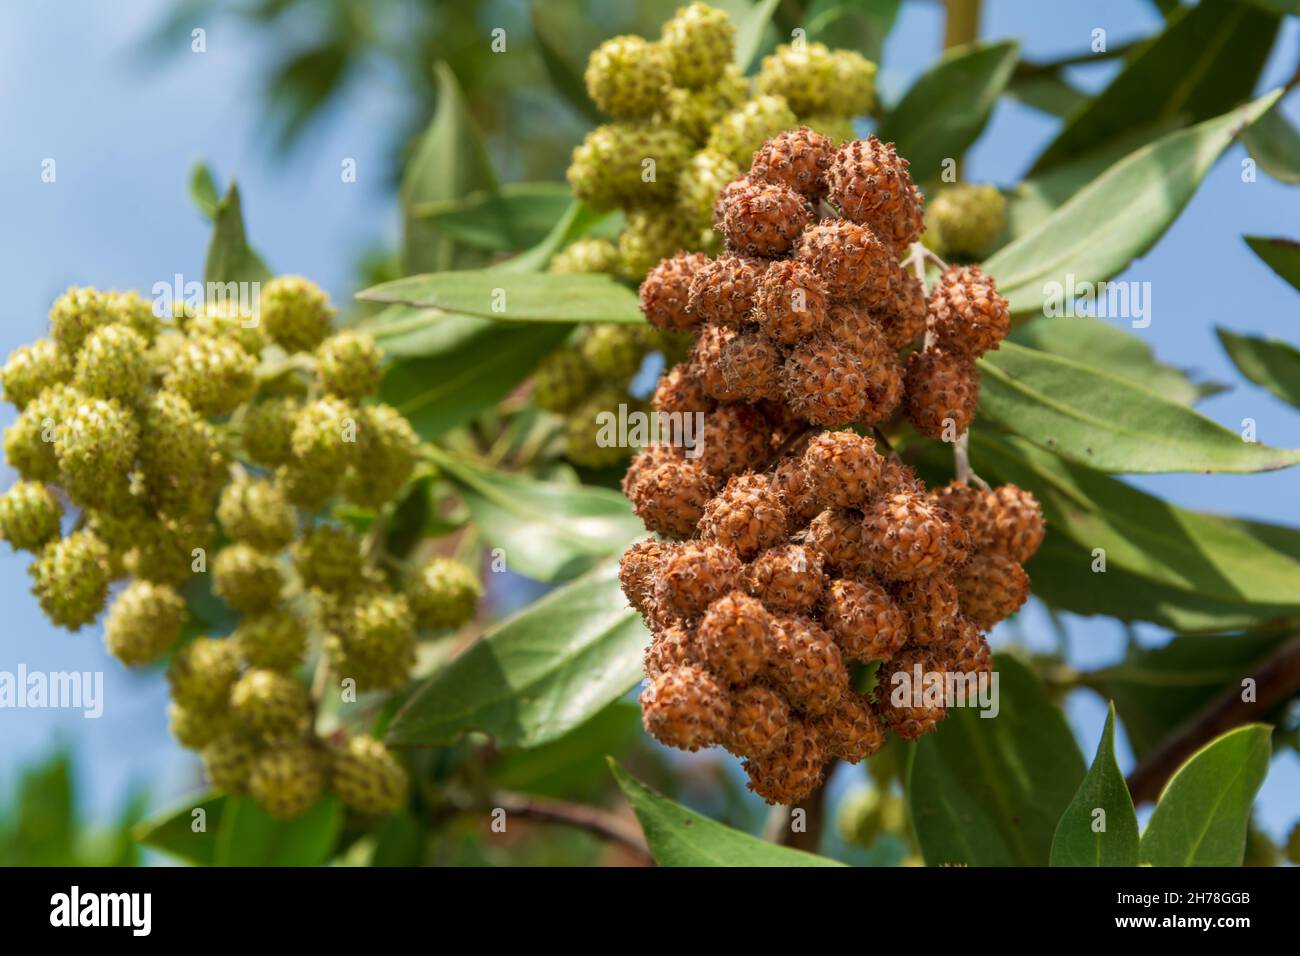 Schnell wachsender Button Mangrove oder Conocarpus erectus Baum mit vielen frischen und gesunden grünen Blättern und Samen Stockfoto